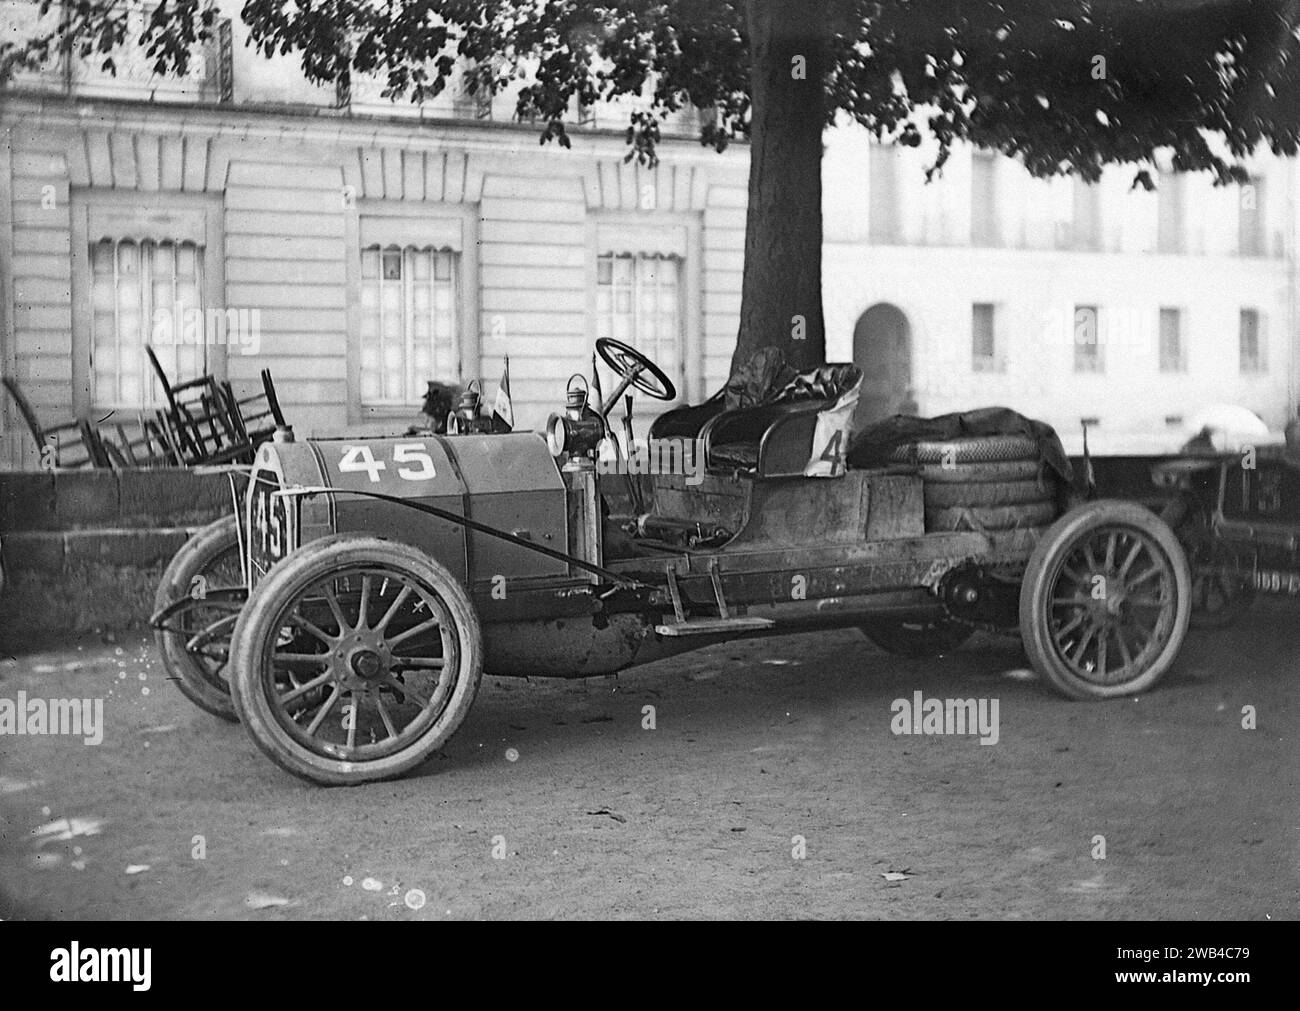 Prima edizione della 24 ore di le Mans endurance sport car race (24 heures du Mans). 26 e 27 giugno 1906. La macchina 45 si è fermata. Foto di Jean de Biré Foto Stock